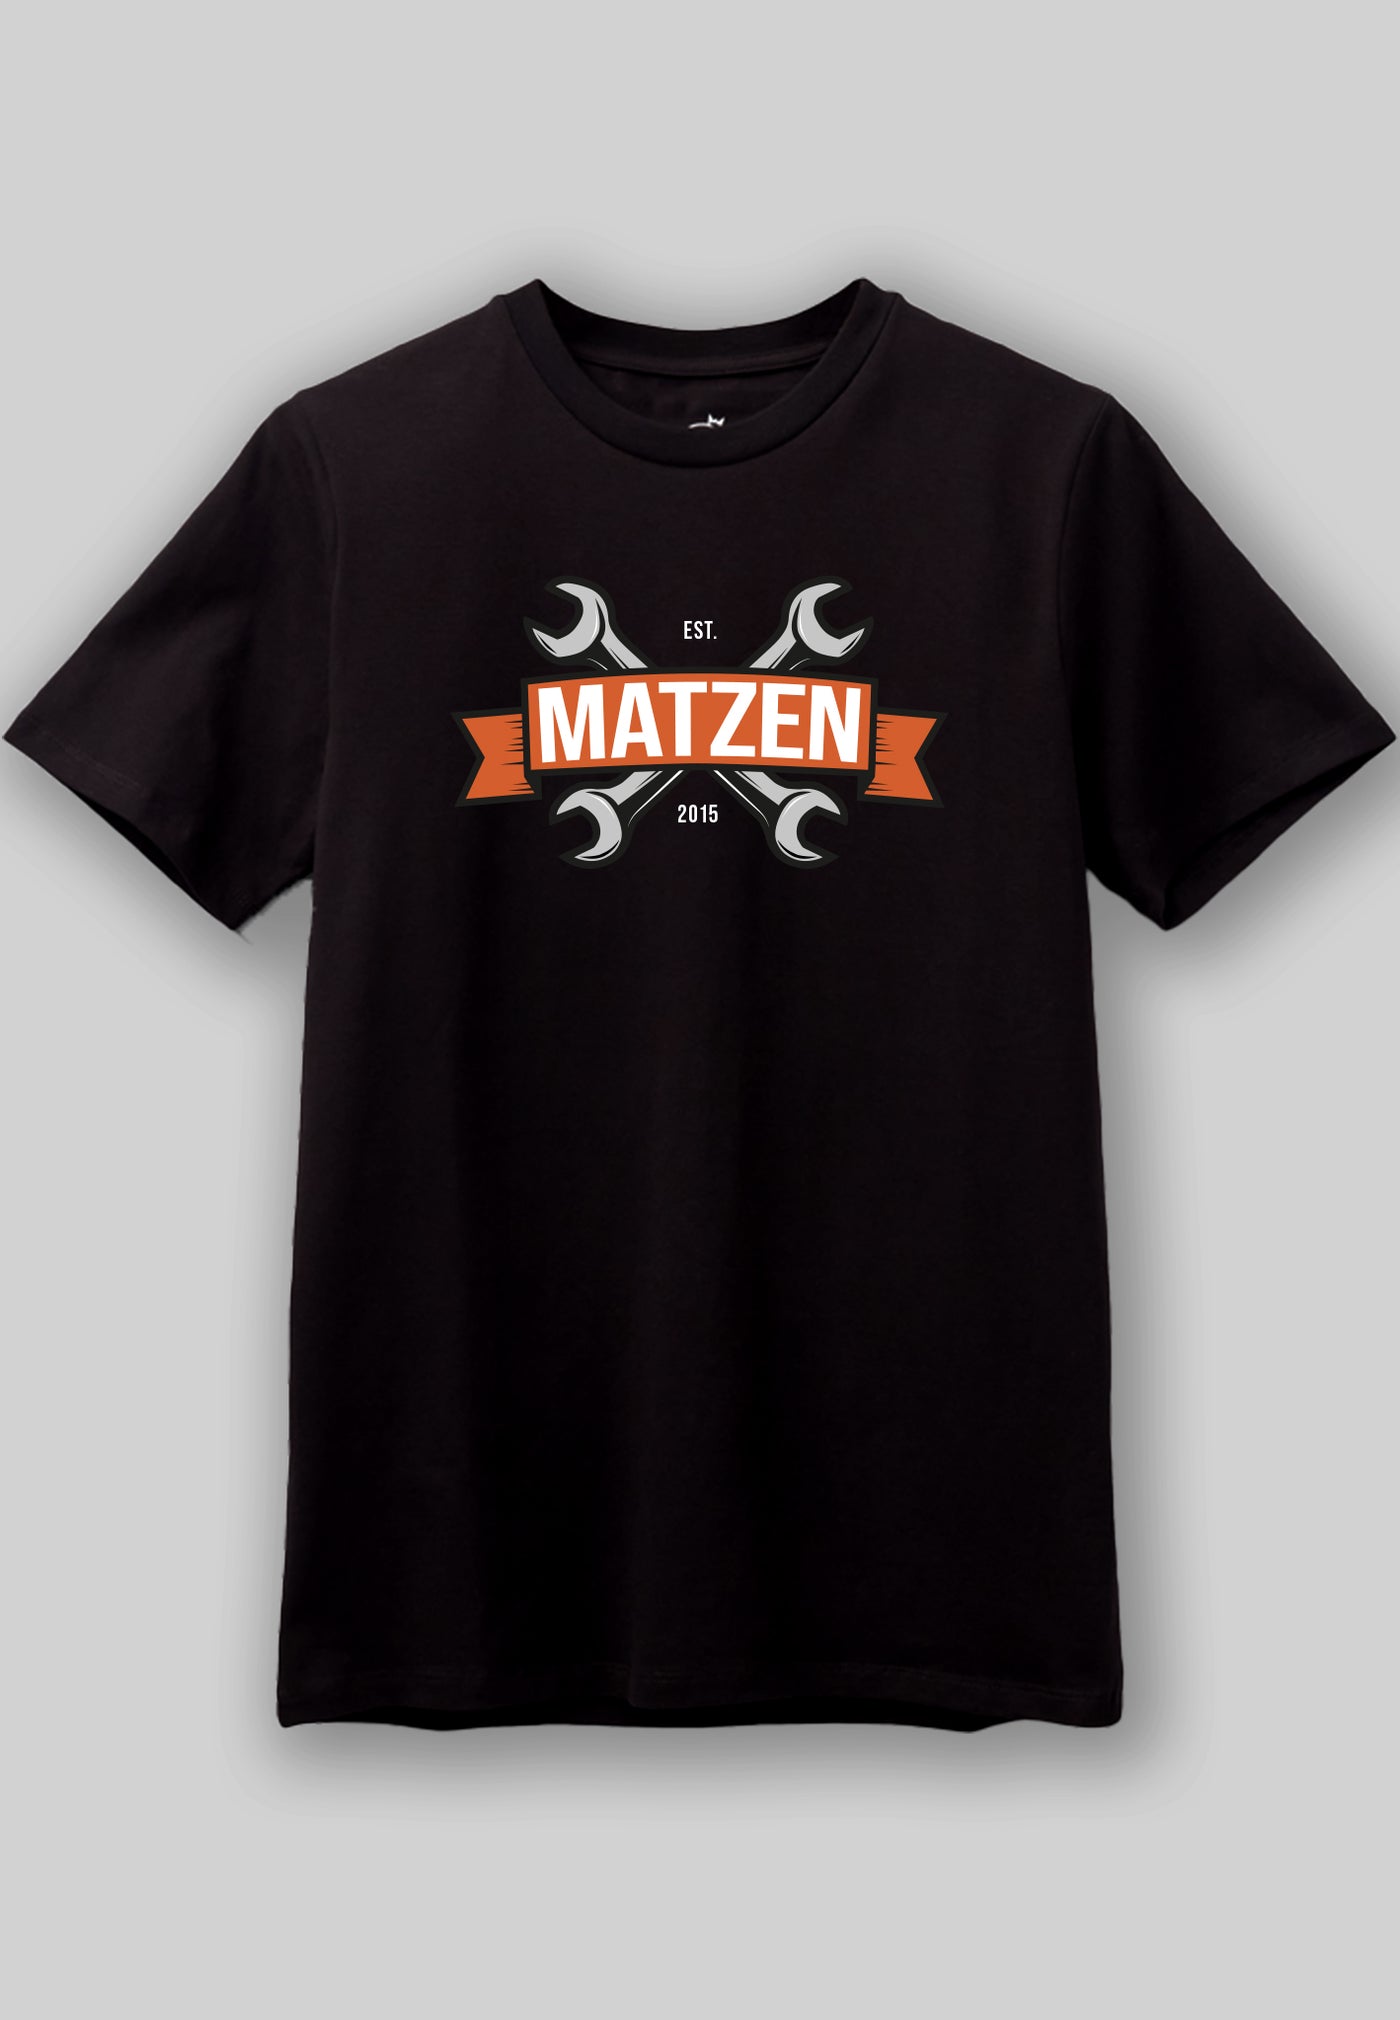 Matzen - Black tee